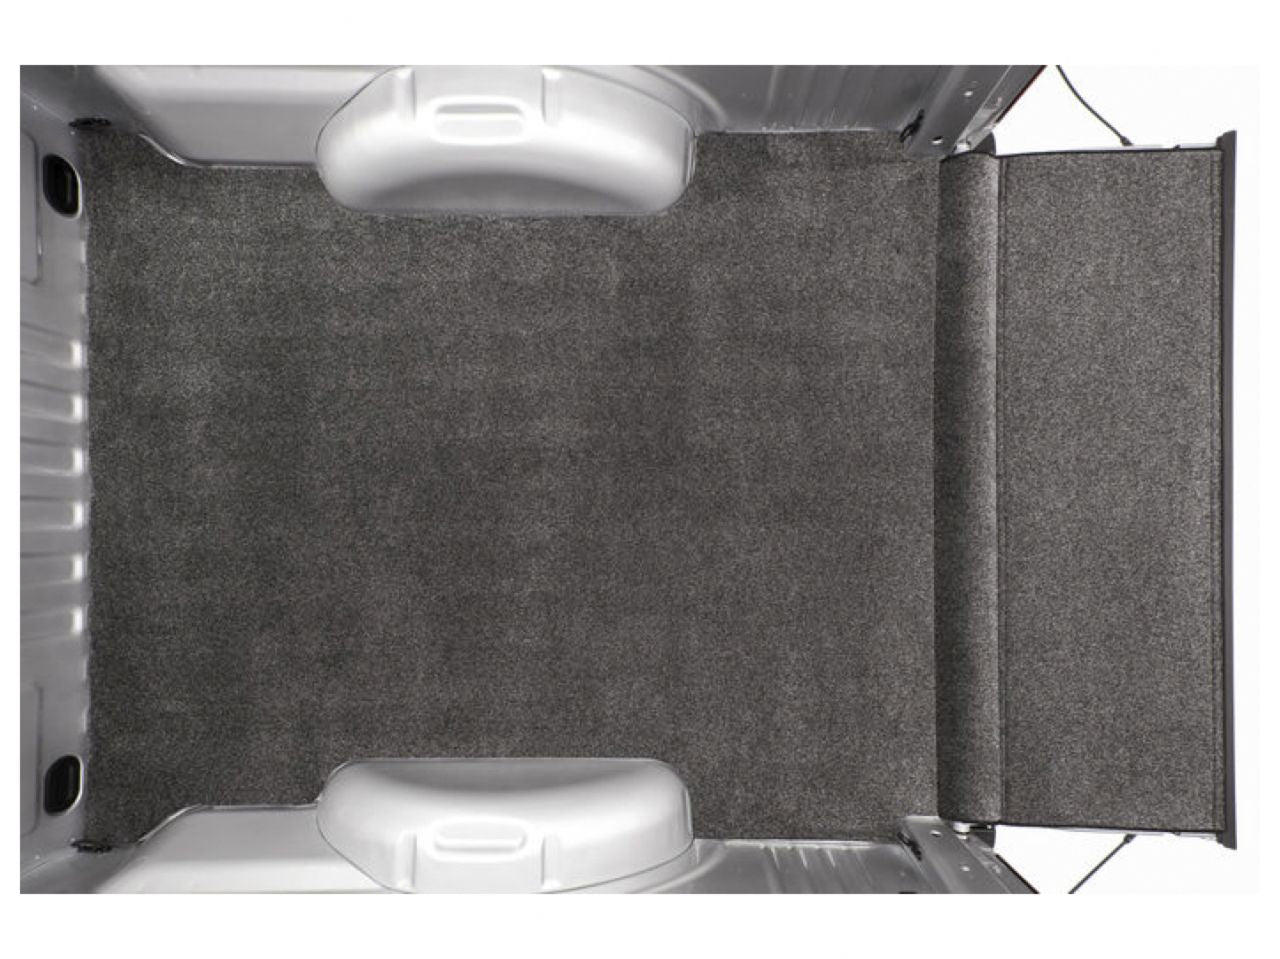 Bedrug XLT Bedmat For Spray-In Or No Bed Liner 07+ GM Silverado/Sierra 6'6"